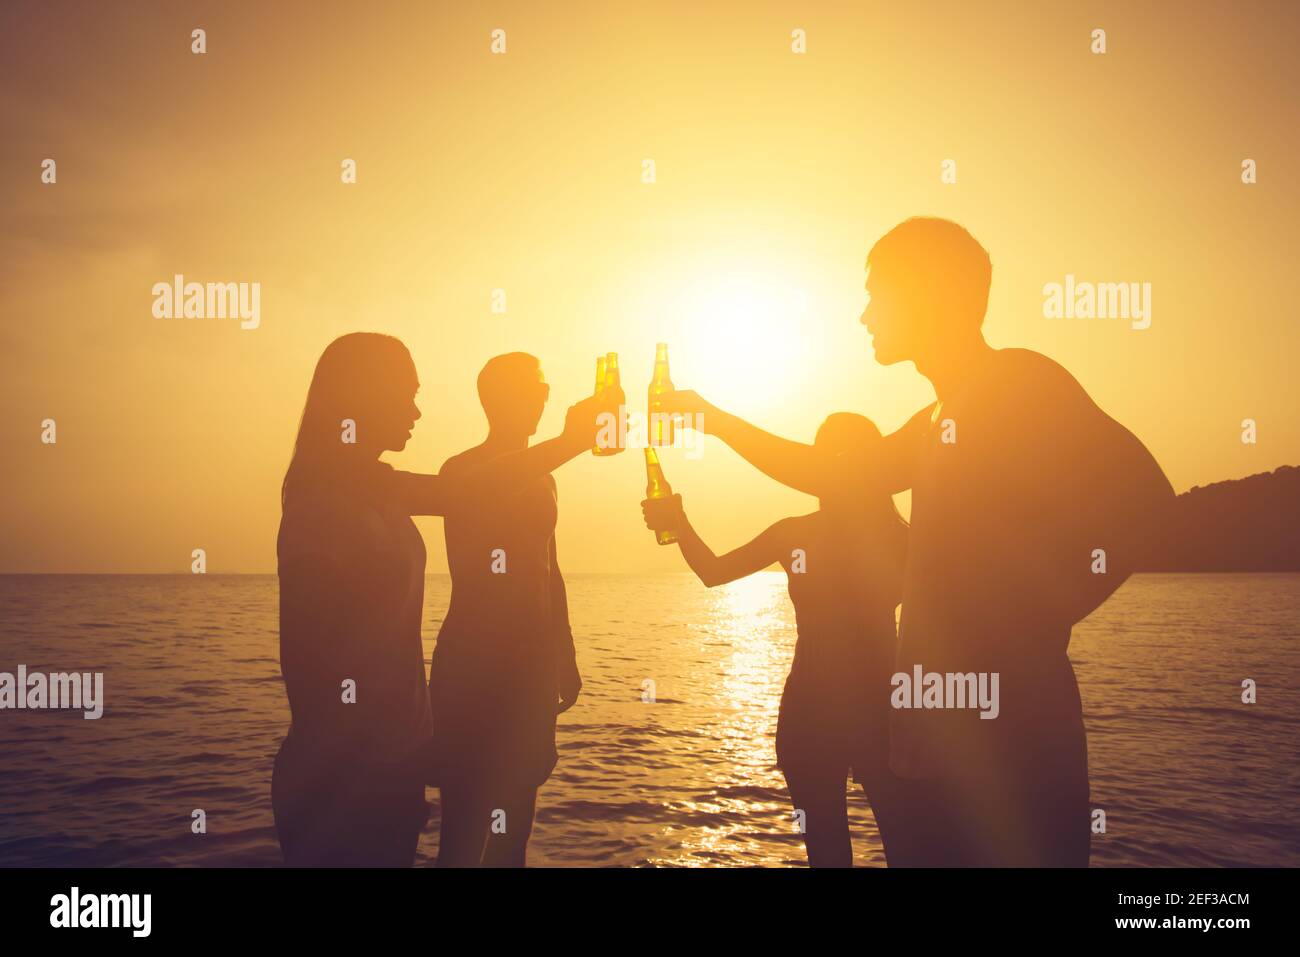 Silueta de las personas que tienen fiesta, botellas de cerveza, hacer un brindis en la playa al atardecer Foto de stock